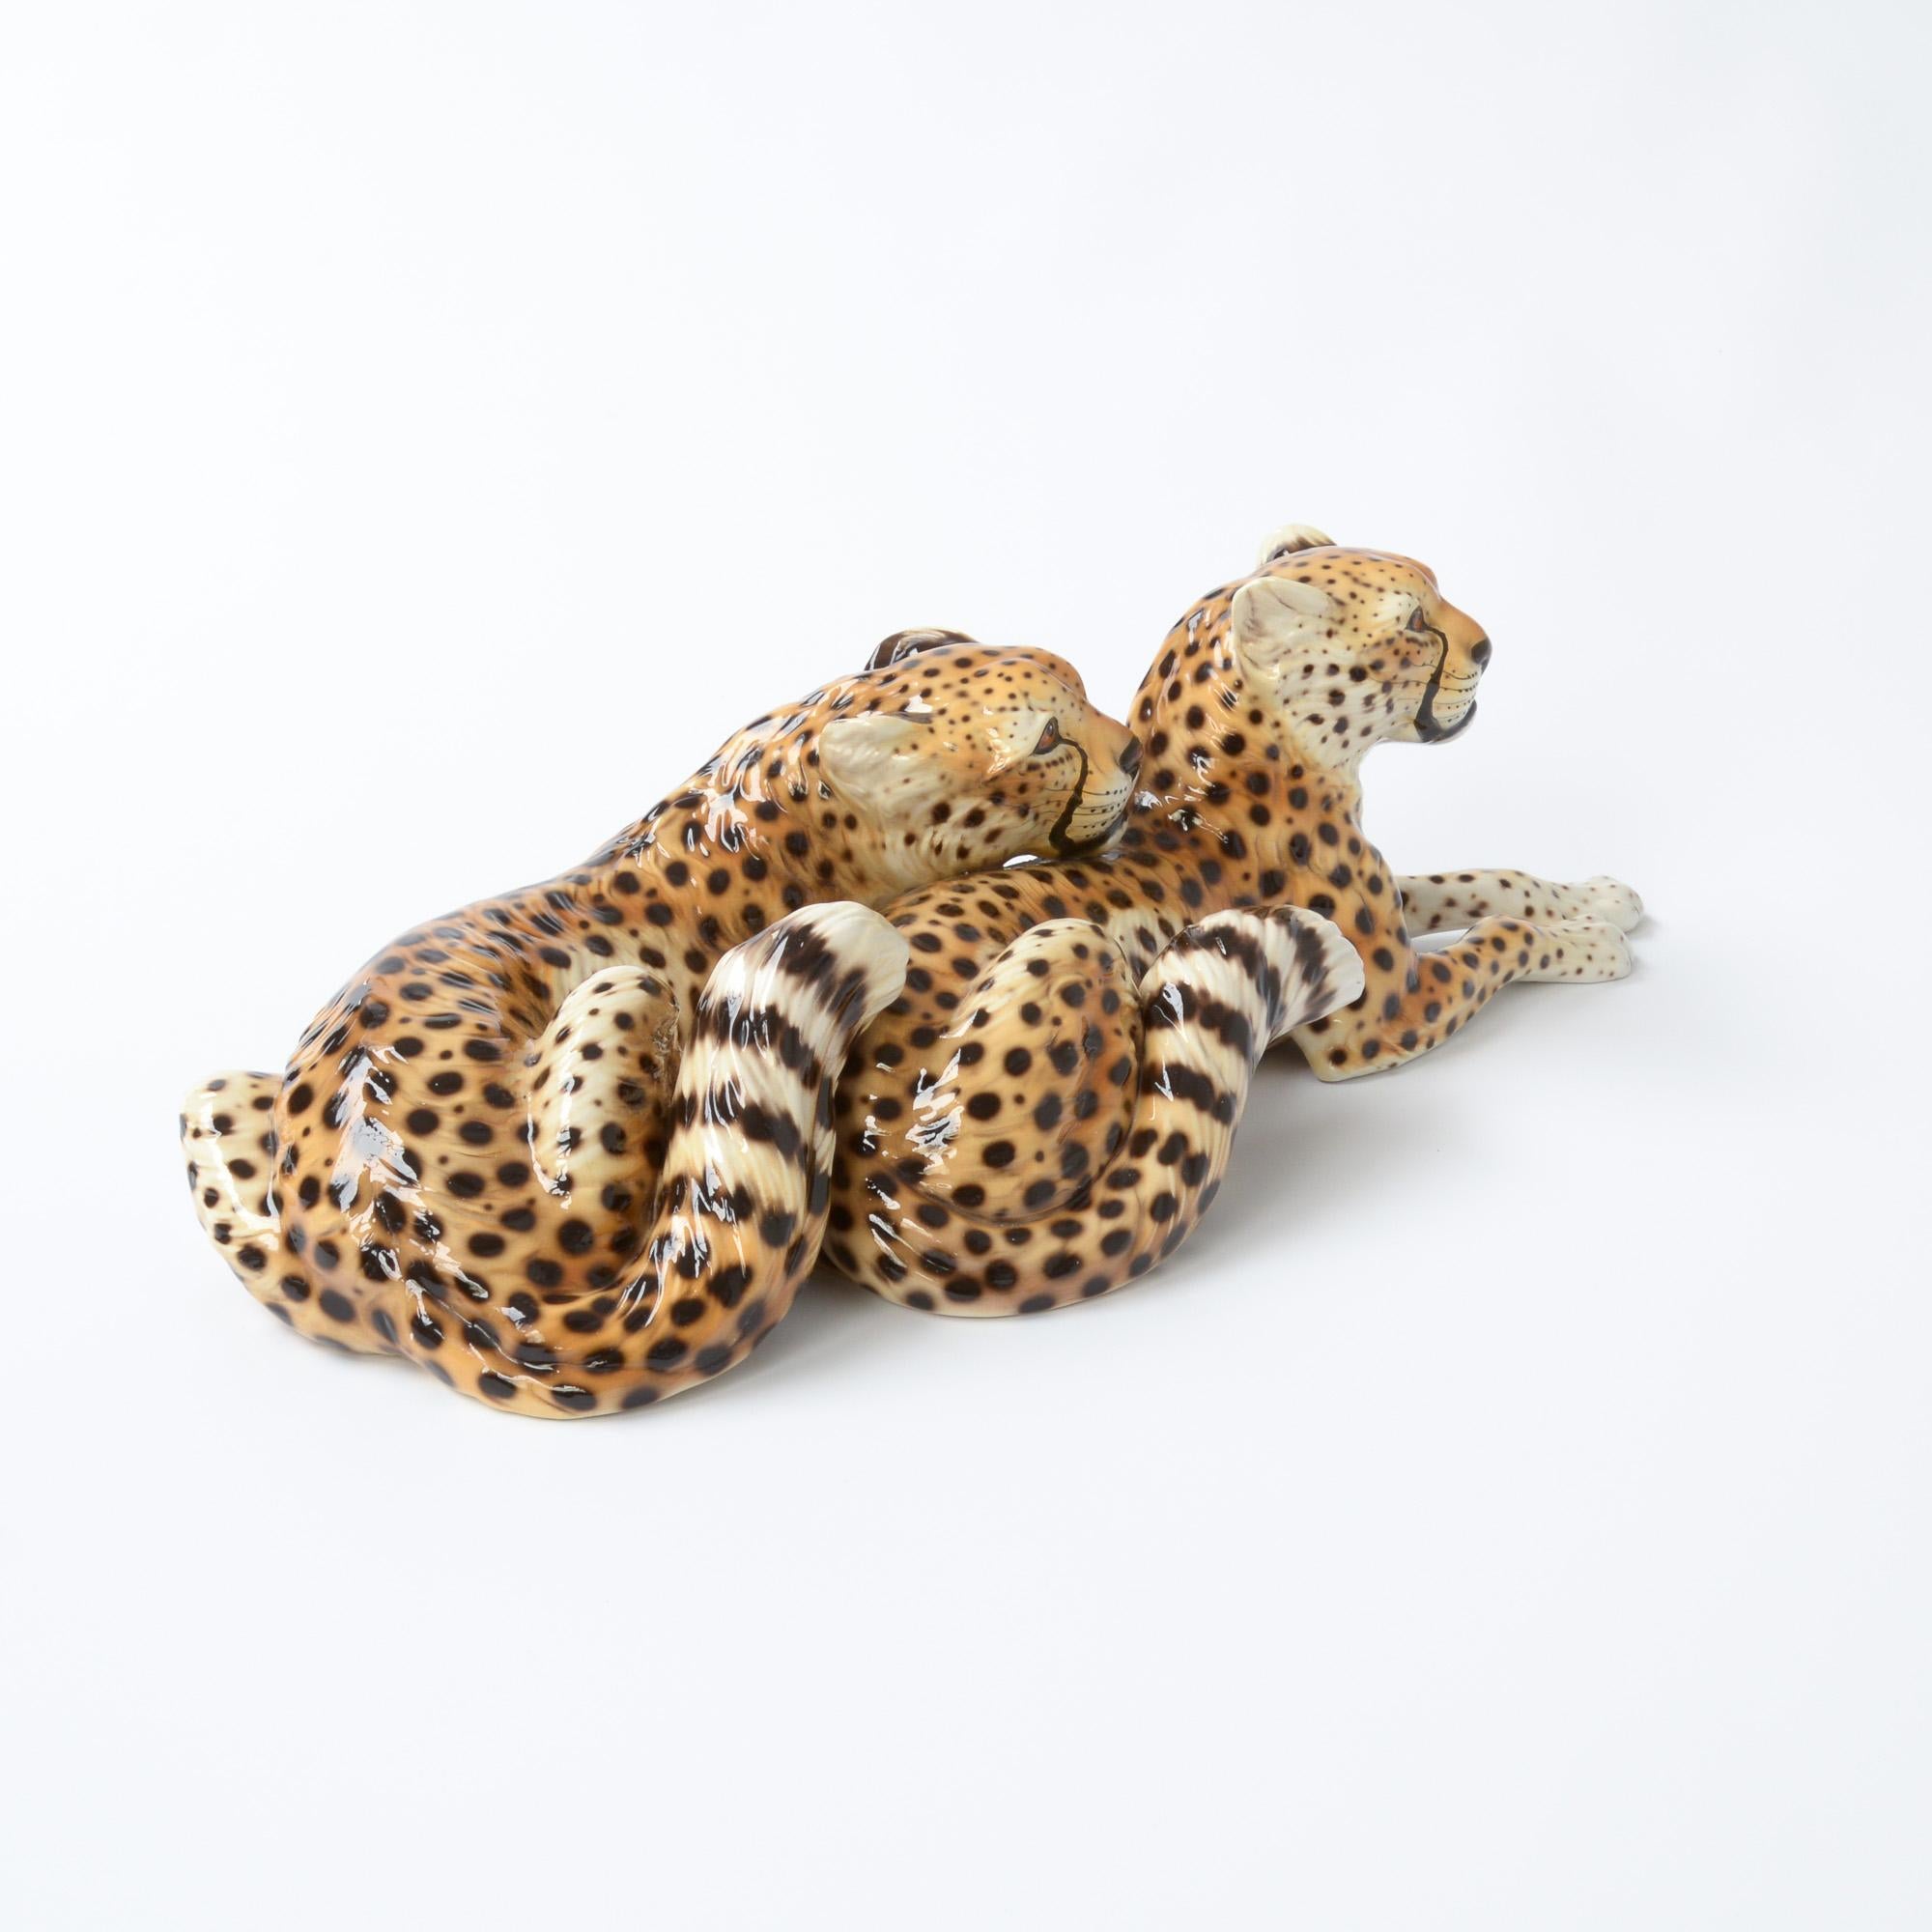 Diese Porzellanskulptur eines liegenden Geparden ist ein Werk des italienischen Künstlers Ronzan. Sie kann auf die 1950er Jahre datiert werden. 
Giovanni Ronzan und sein Bruder gründeten die Ronzan-Fabrik in den 1940er Jahren:: kurz nachdem er seine